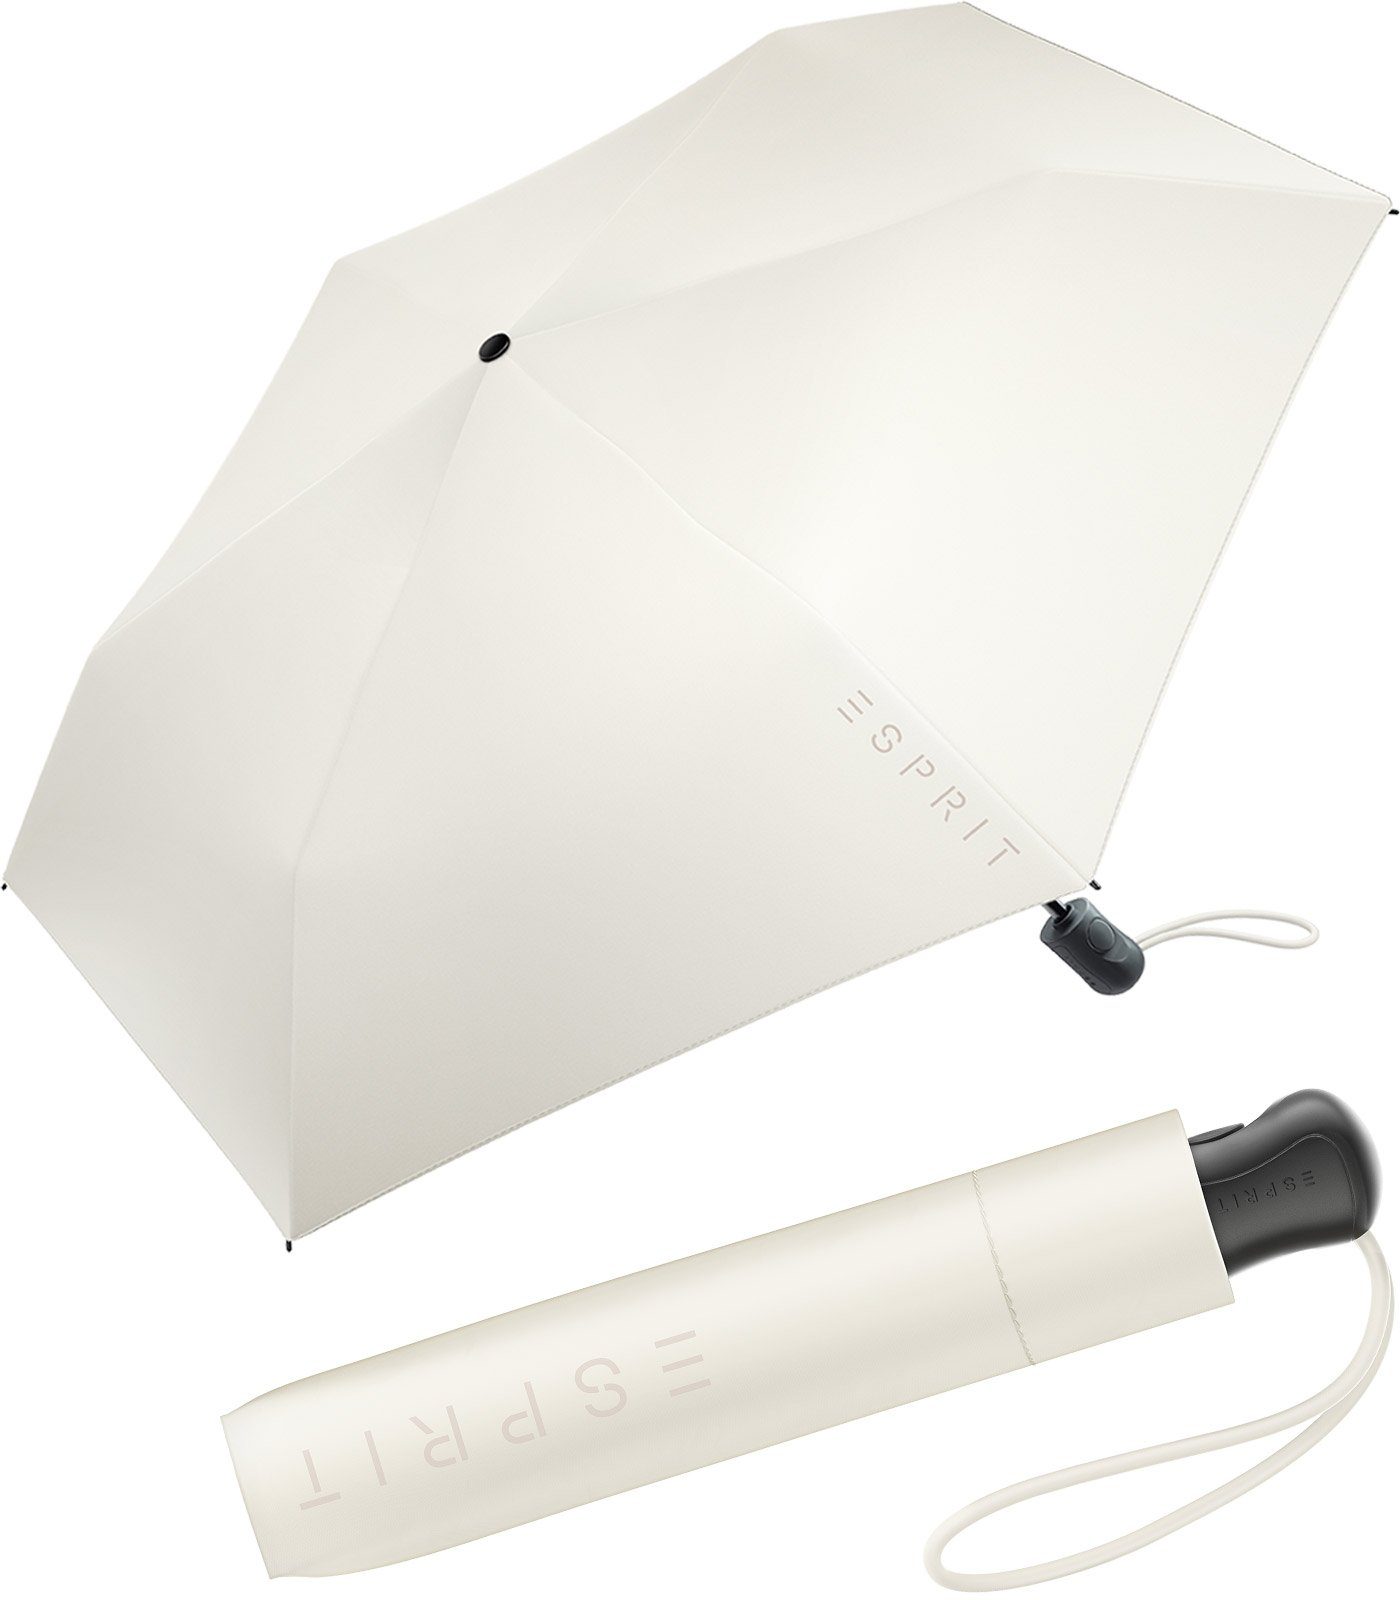 Esprit Taschenregenschirm Damen Easymatic Slimline Auf-Zu Automatik FJ 2022, leicht und stabil, in den neuen Trendfarben ivory